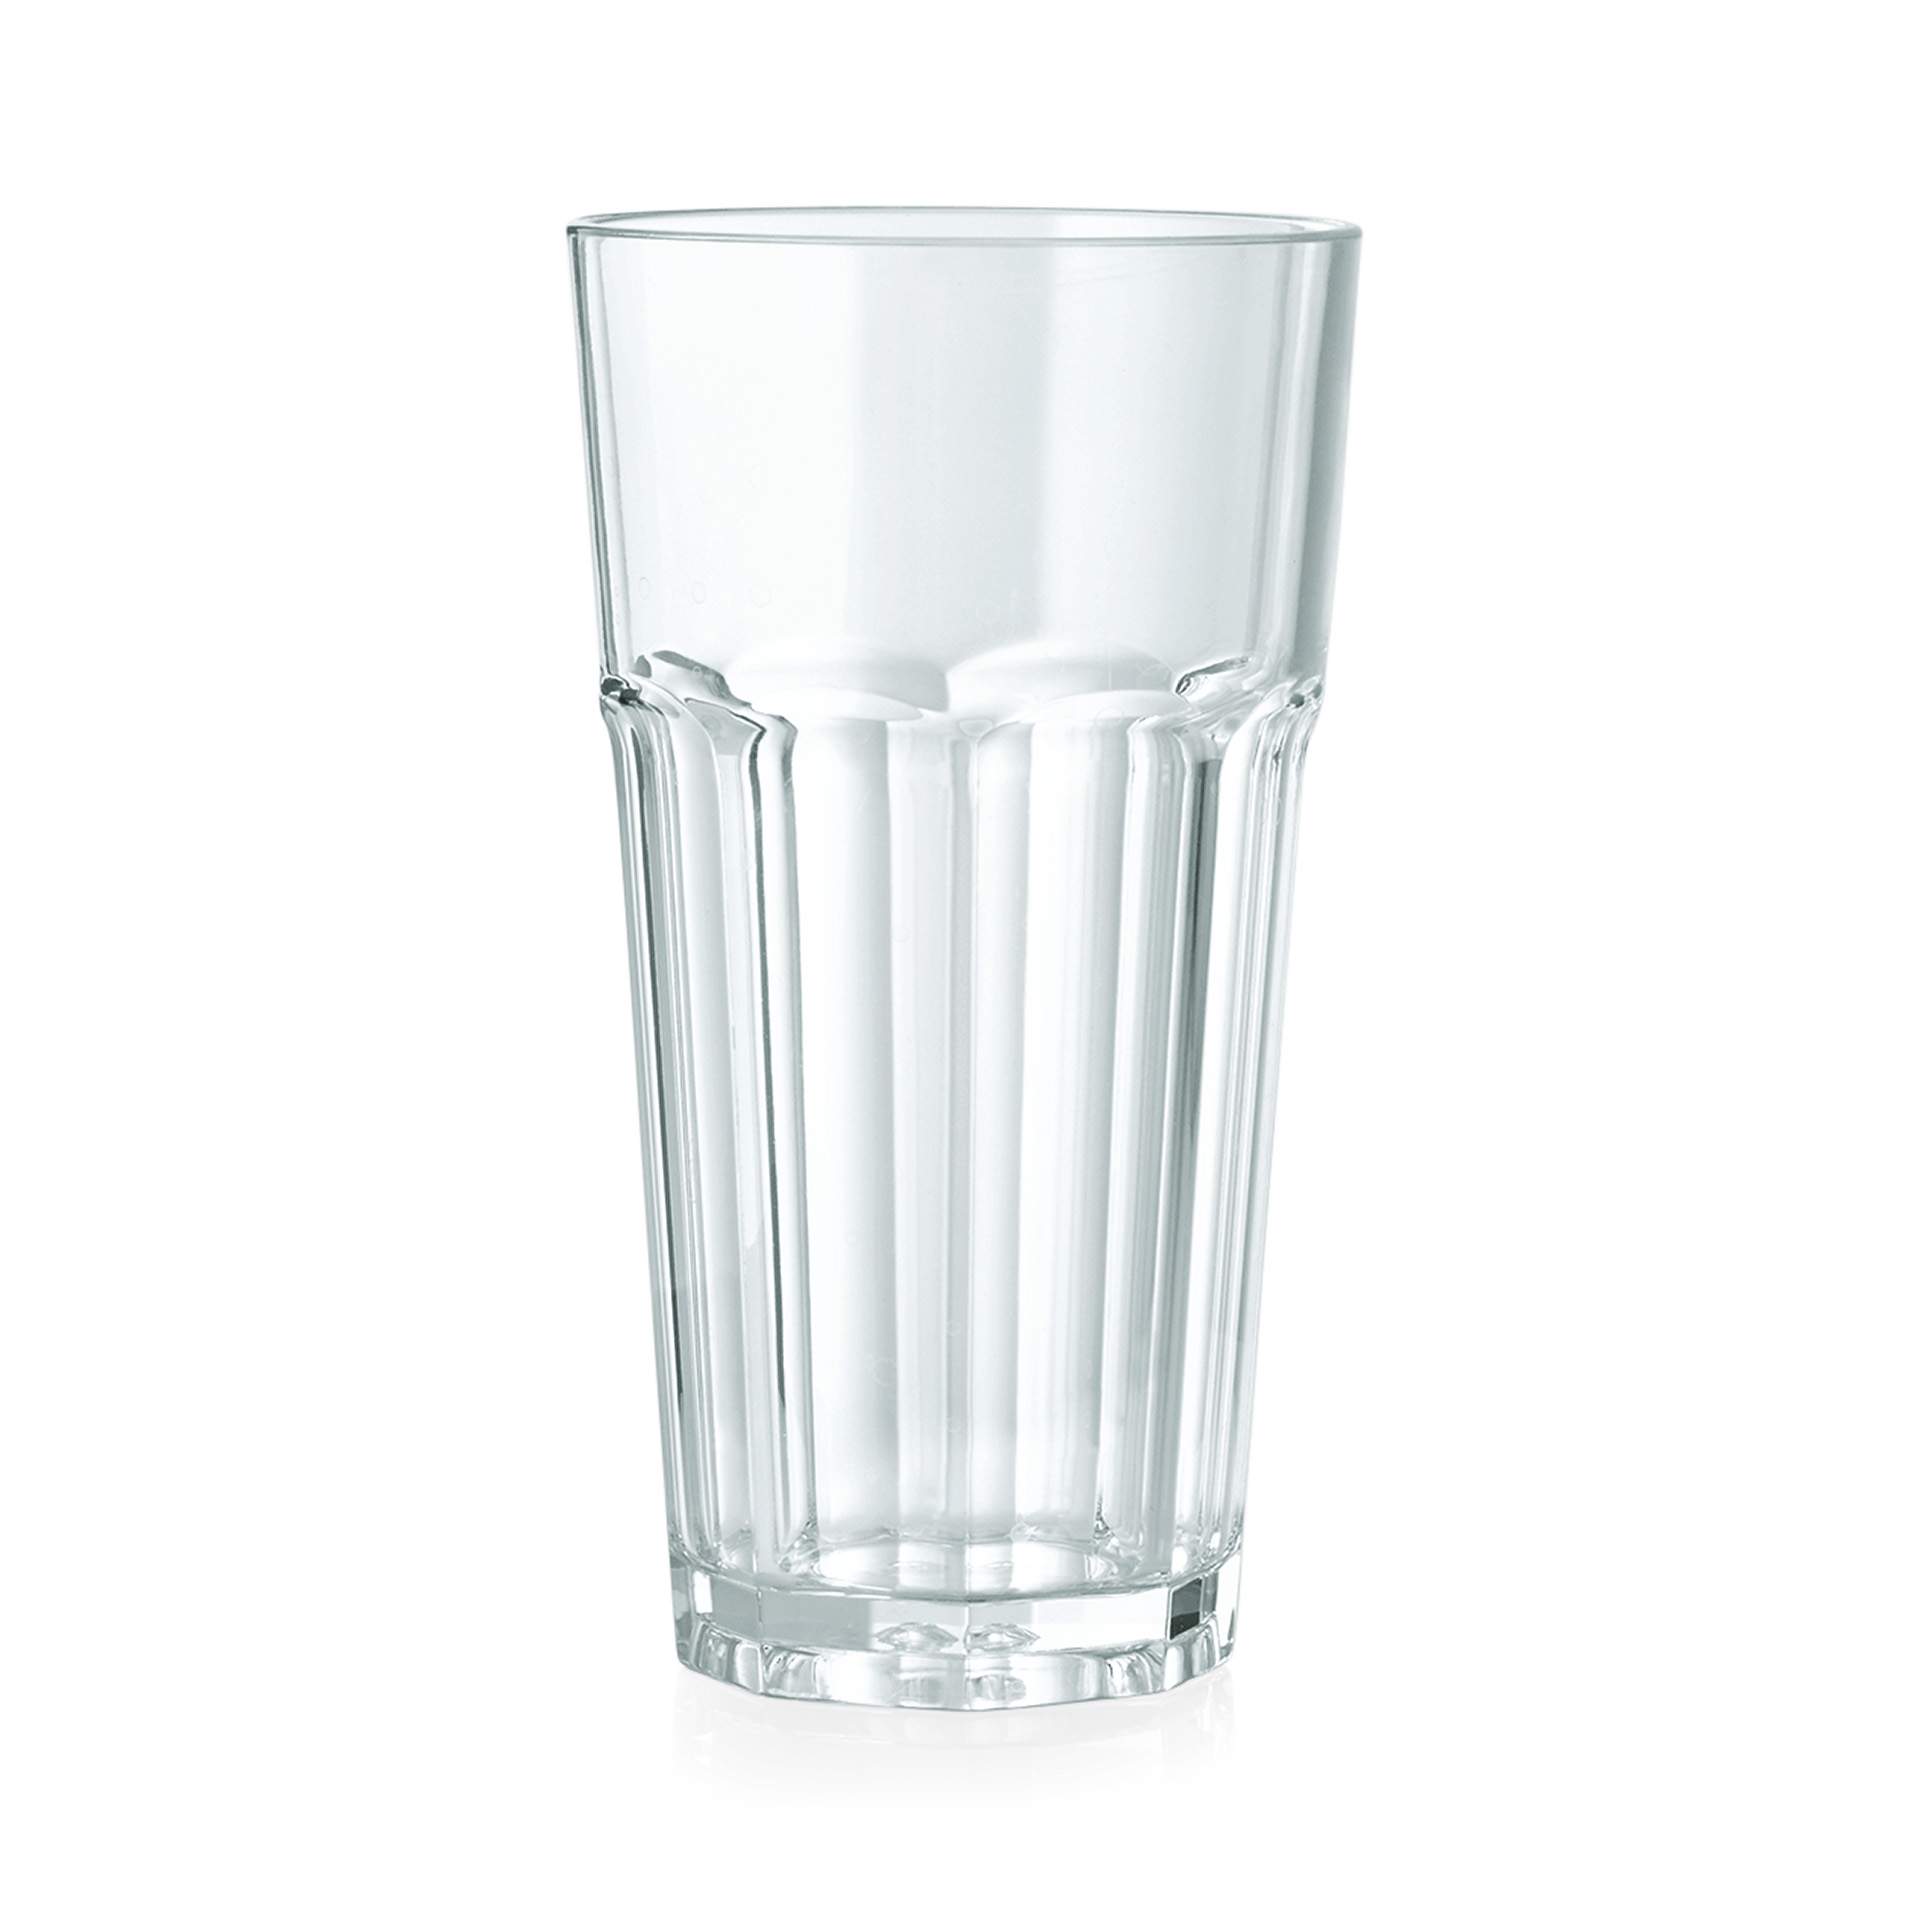 Longdrink-Glas - Serie Pool - Abm. 14,0 cm - Ø oben / unten 7,7 / 5,1 cm - Inhalt 0,36 l - Polycarbonat - premium Qualität - 9450036-A